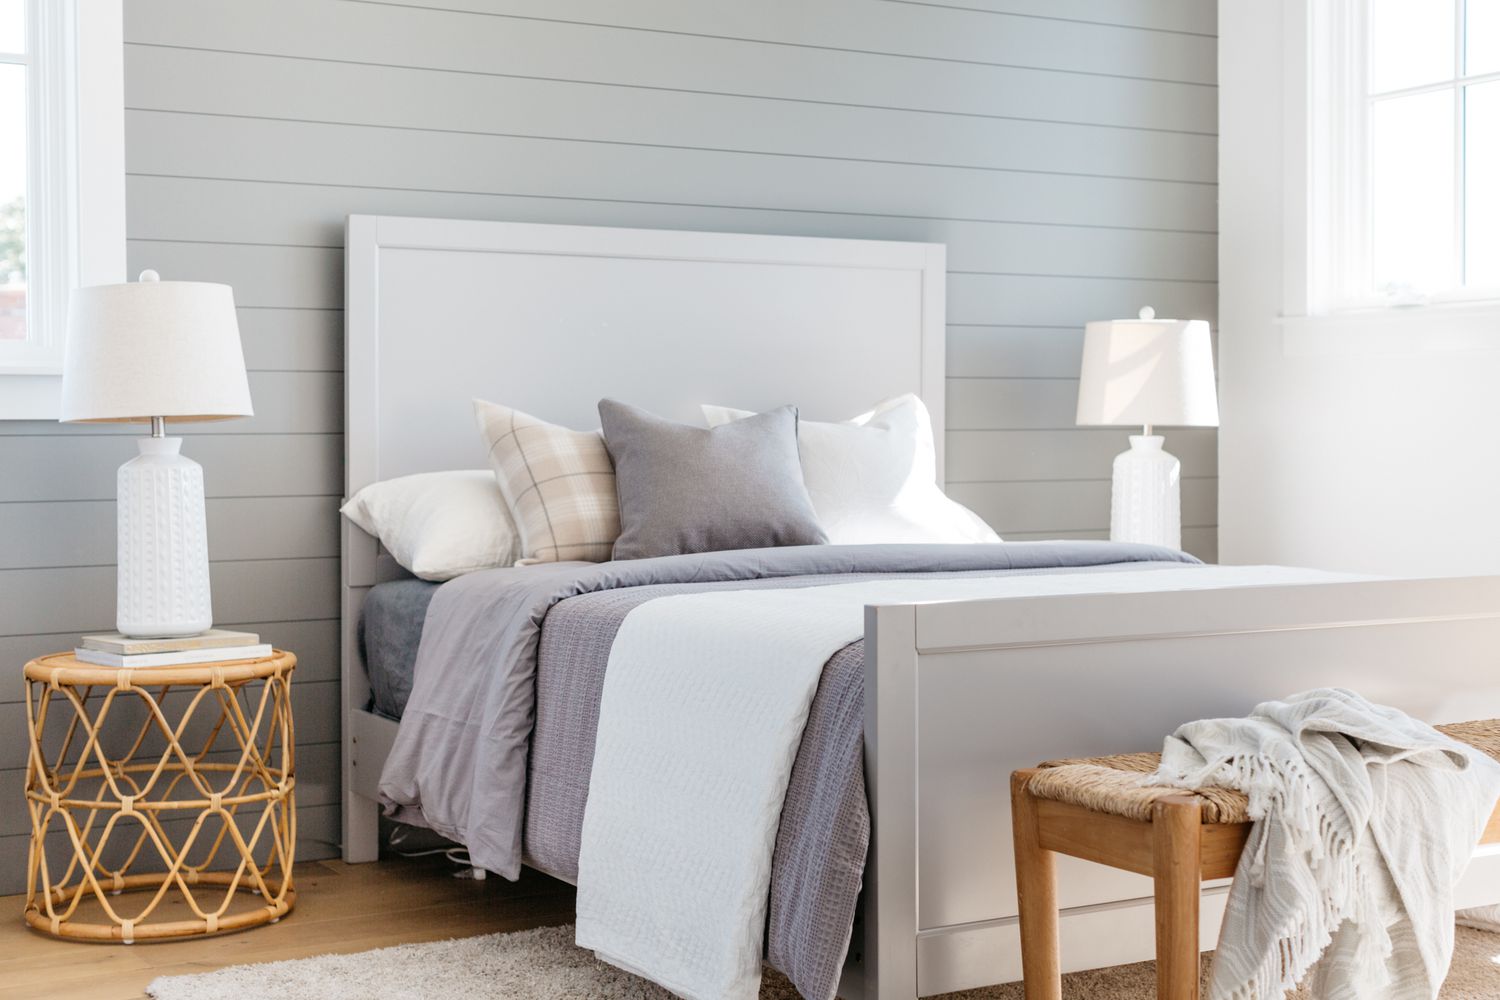 Chambre à coucher de style maison de ferme avec des accents de décoration gris clair et blanc à côté d'un banc boisé et des tables de nuit